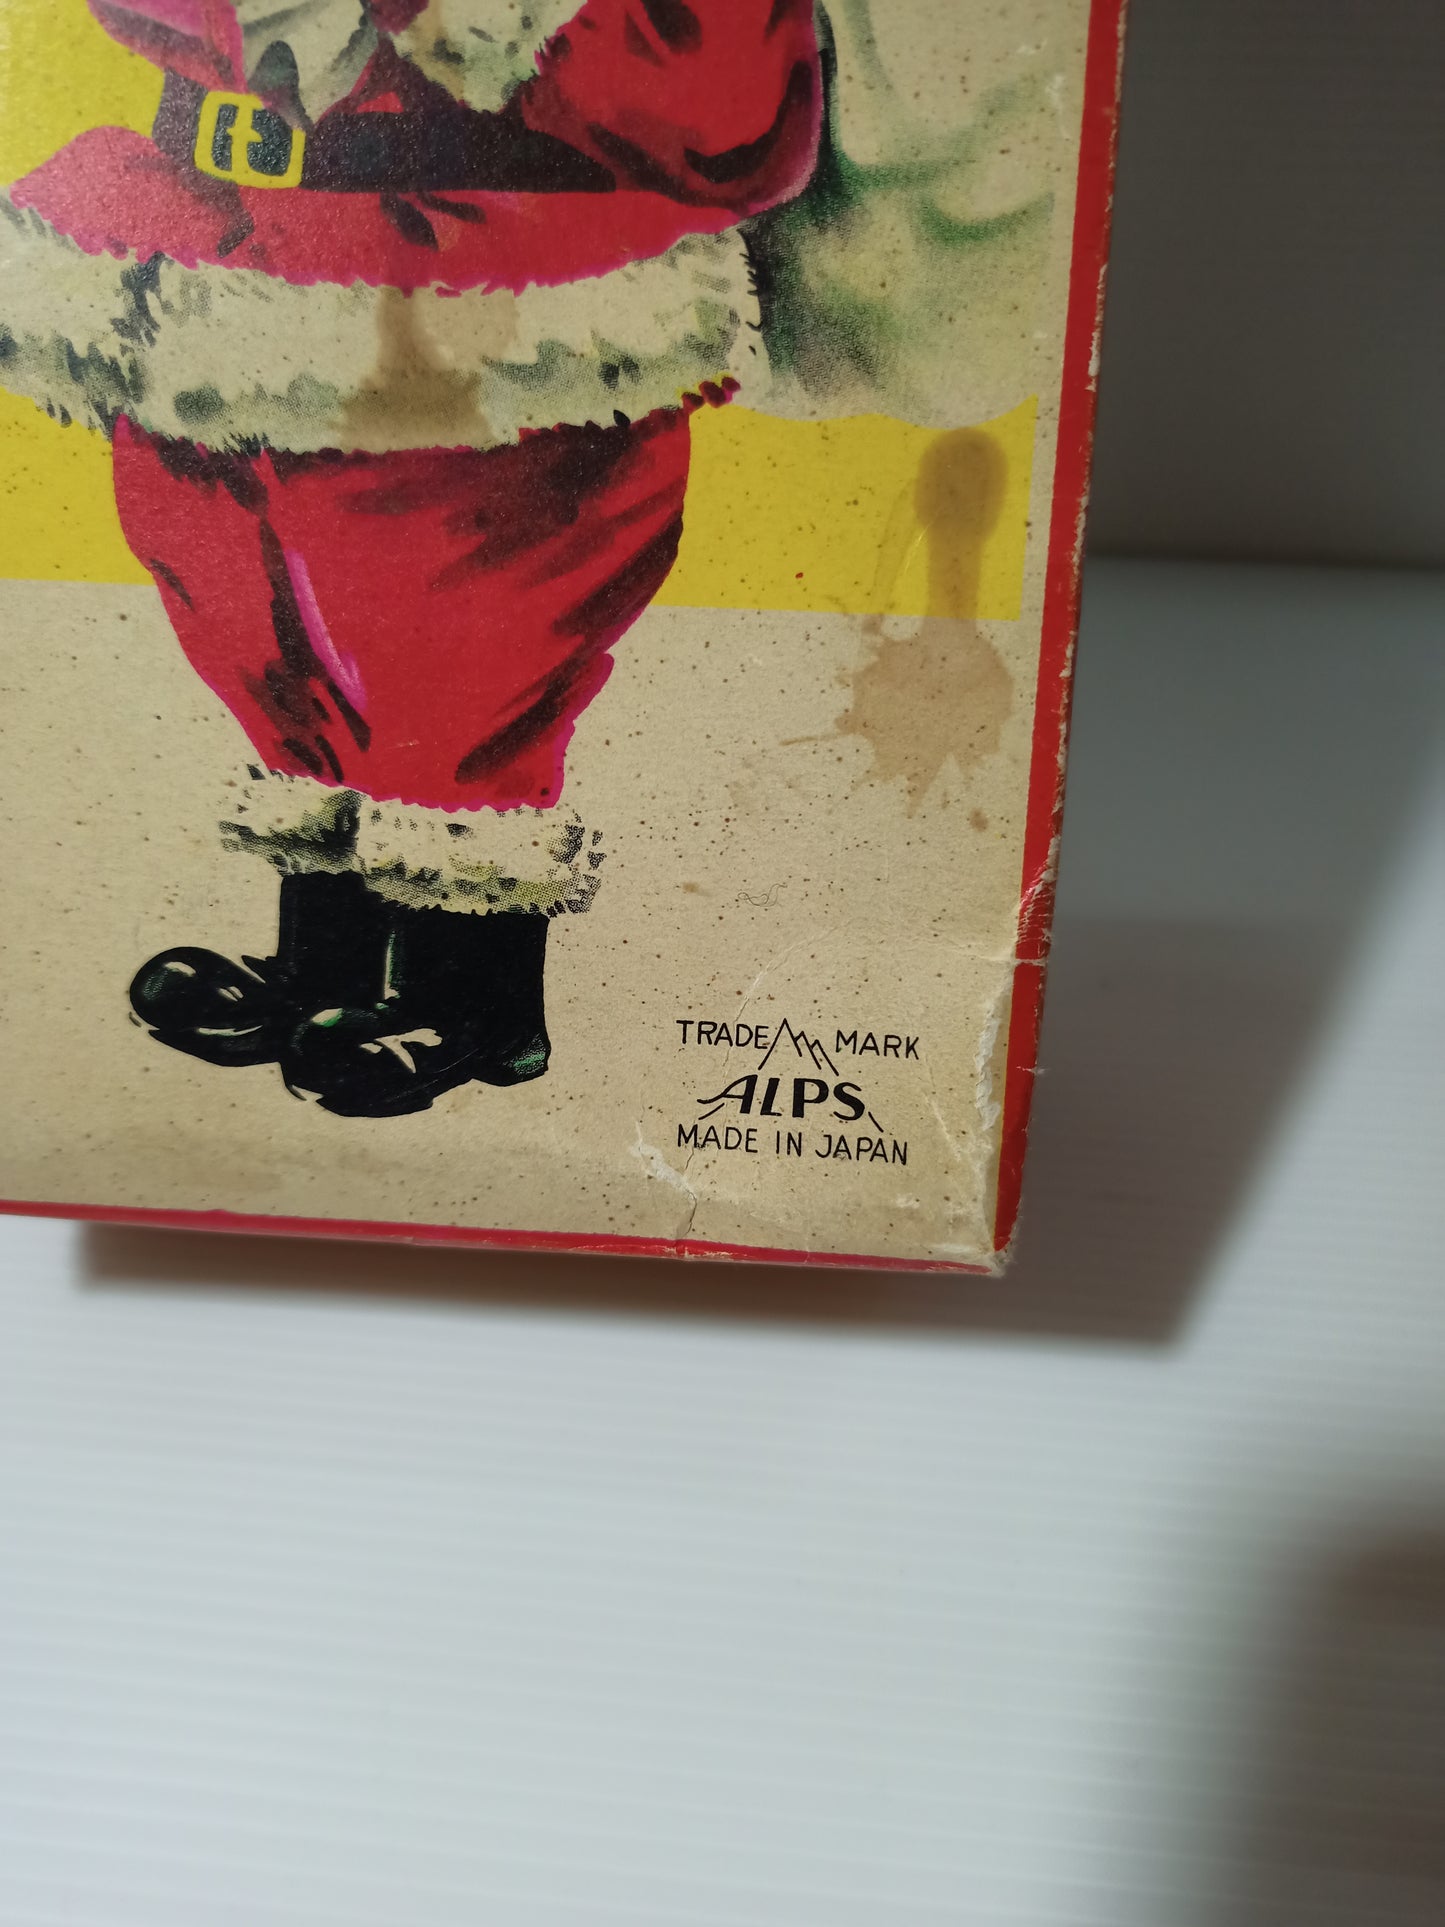 Santa Claus Trade Mark Alps Japan Meccanico Anni 60 LEGGI DESCRIZIONE